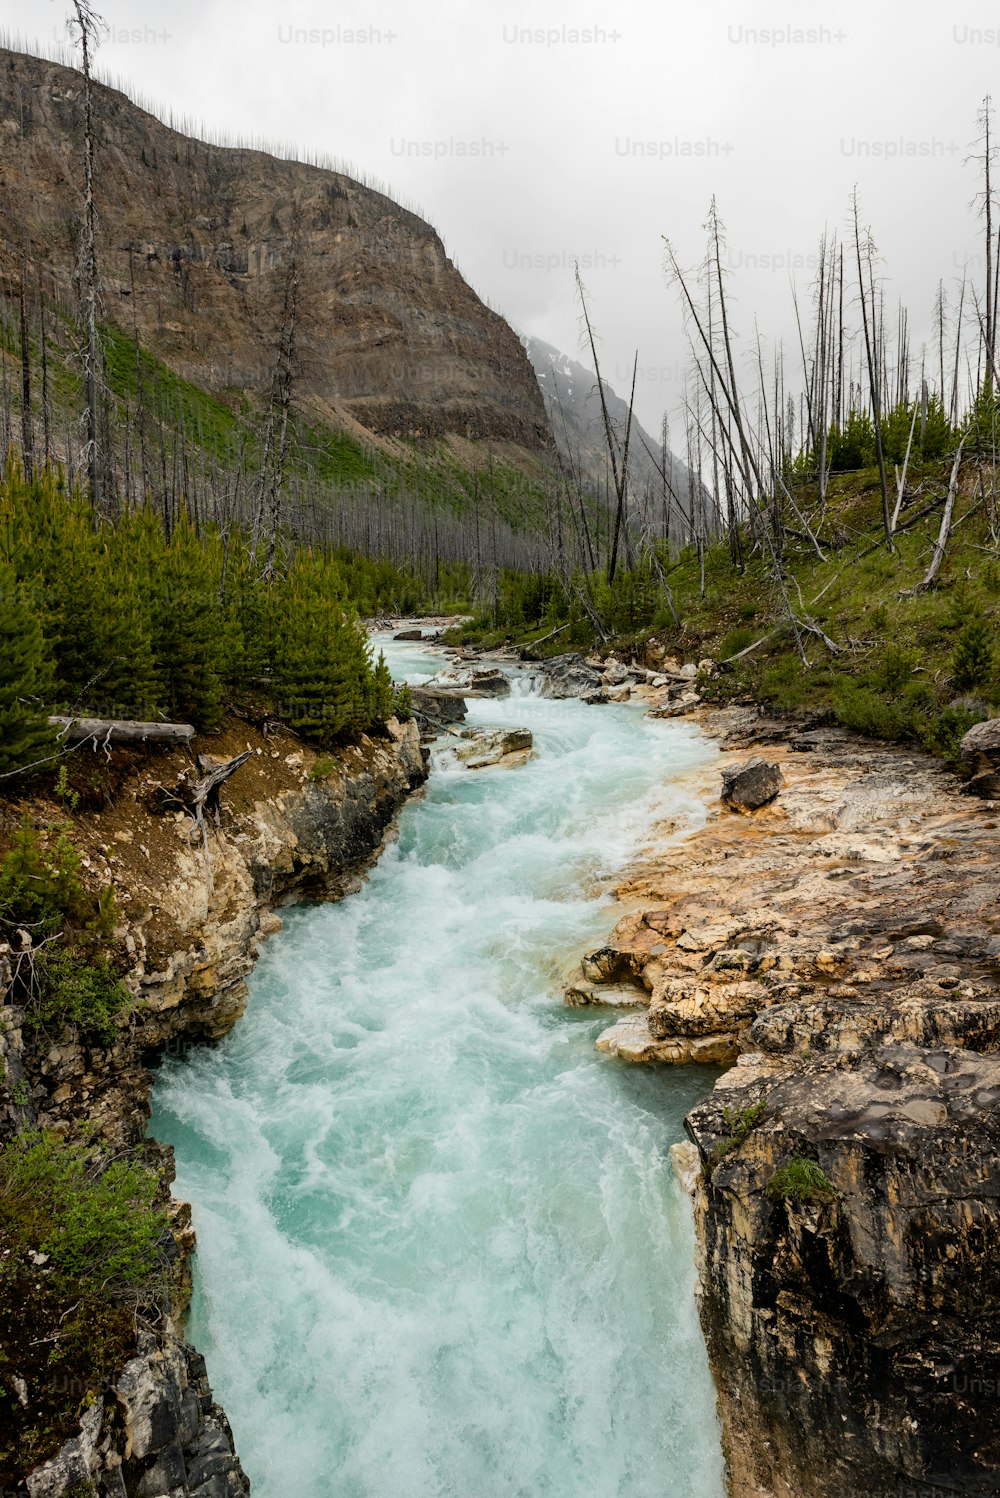 une rivière traversant une zone rocheuse